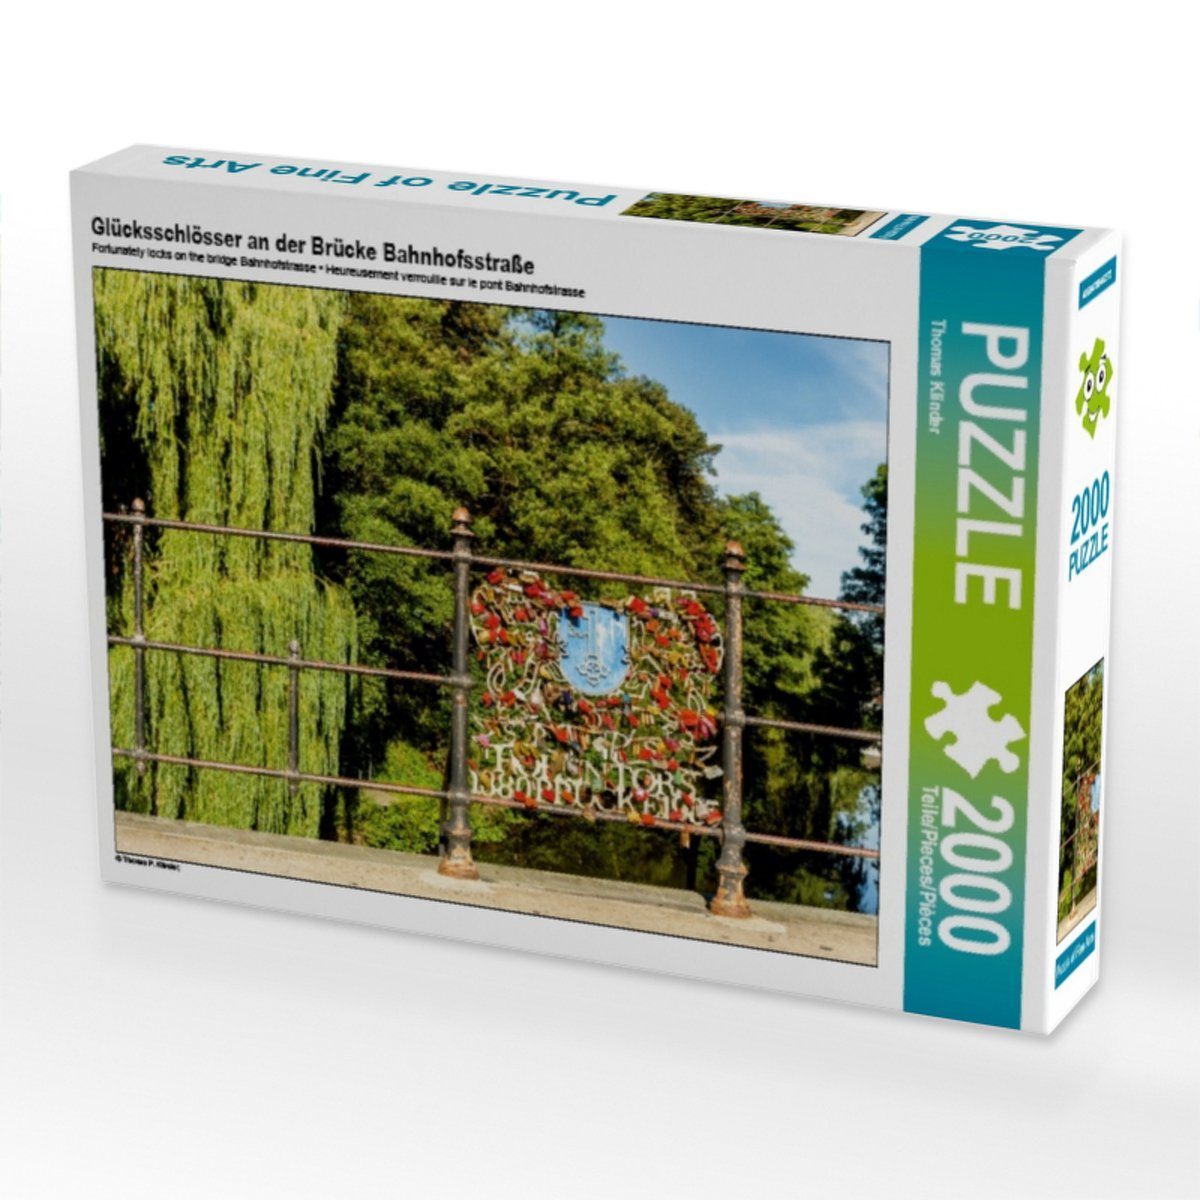 2000 90 Glücksschlösser Brücke Puzzleteile Teile Puzzle an CALVENDO Lege-Größe Puzzle Foto-Puzzle Bahnhofsstraße der 67 cm 2000 von Bild CALVENDO x TomKli,